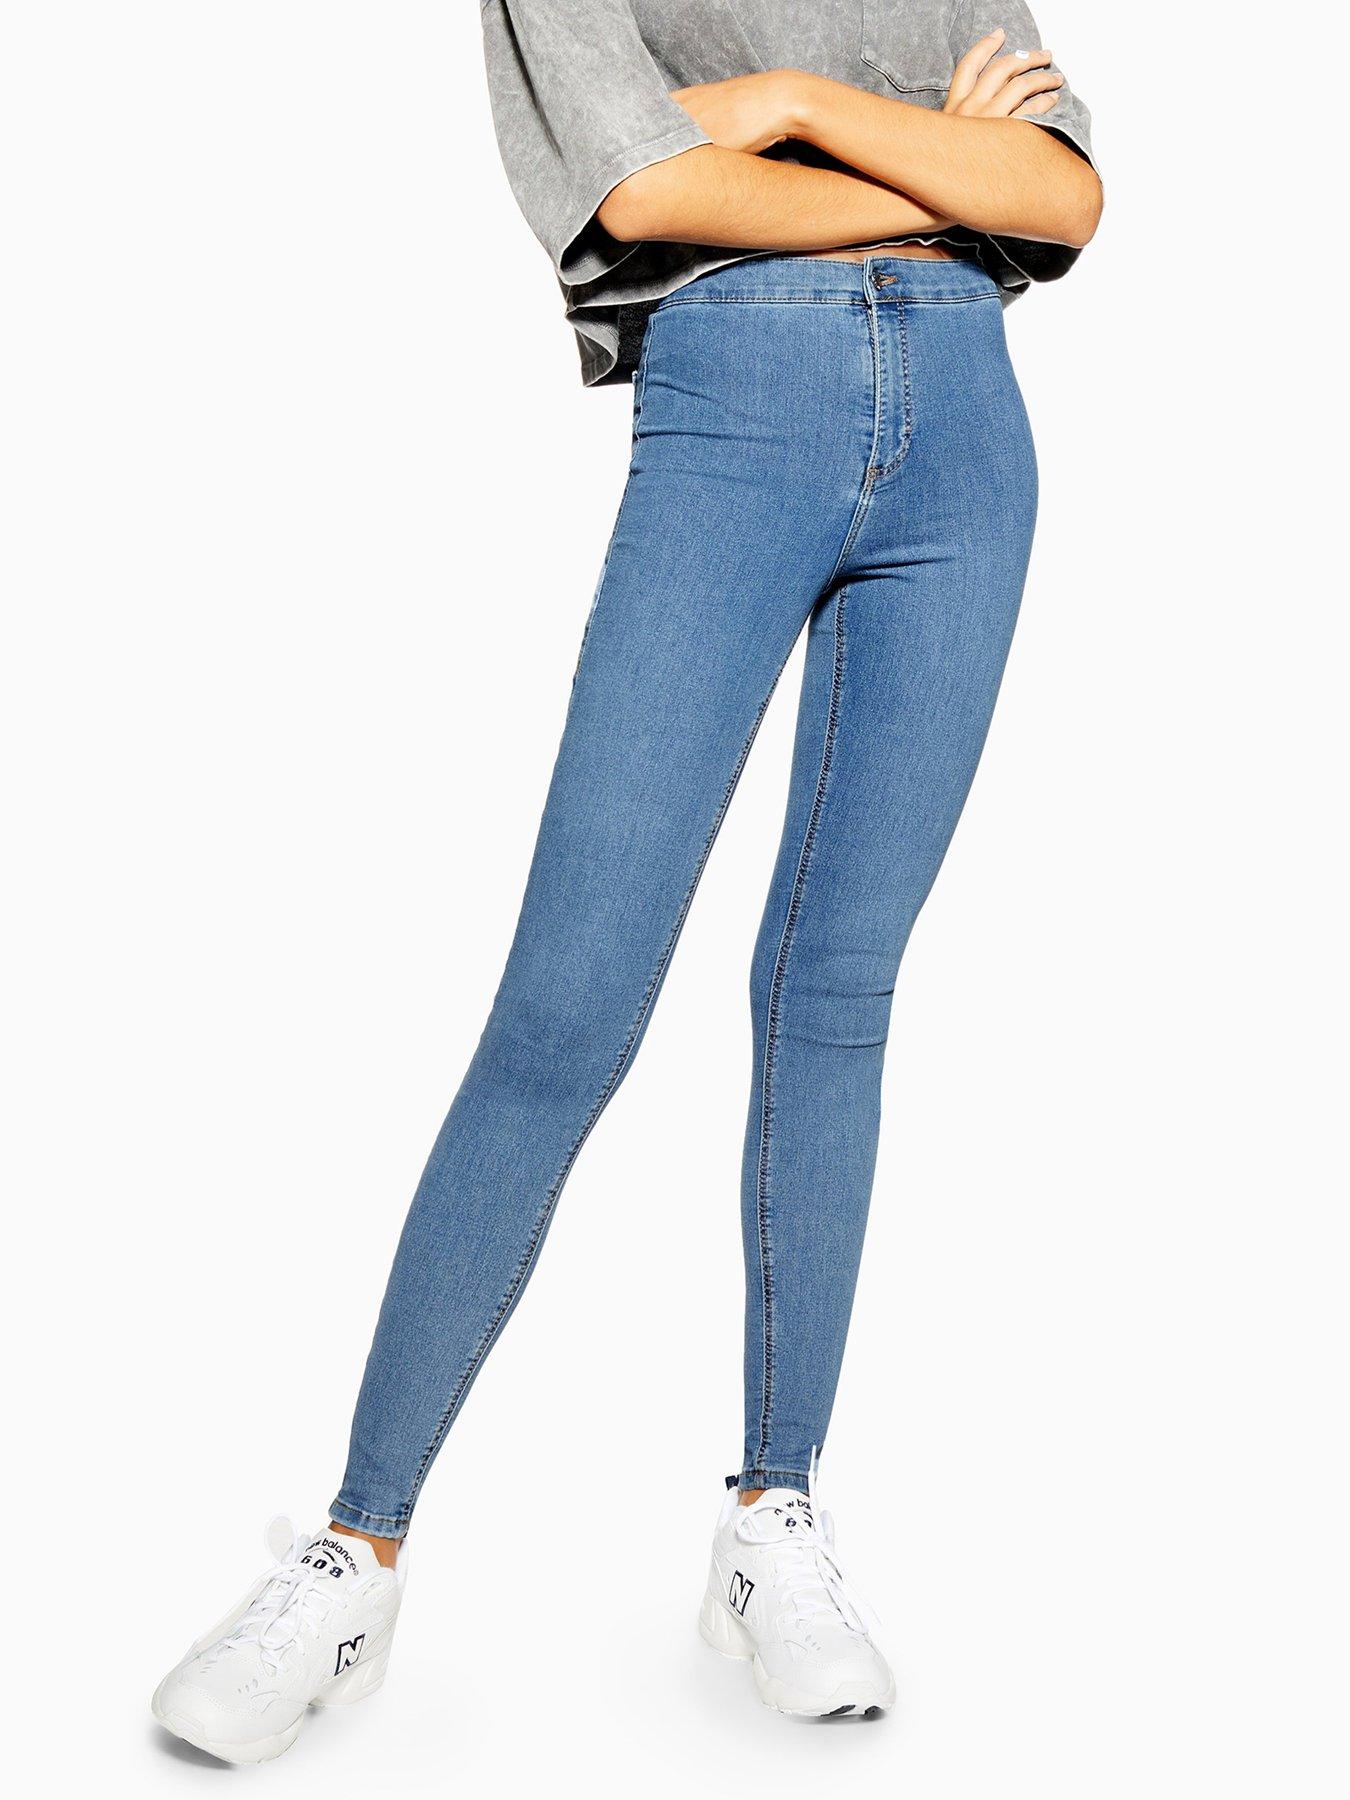 topshop blue jeans